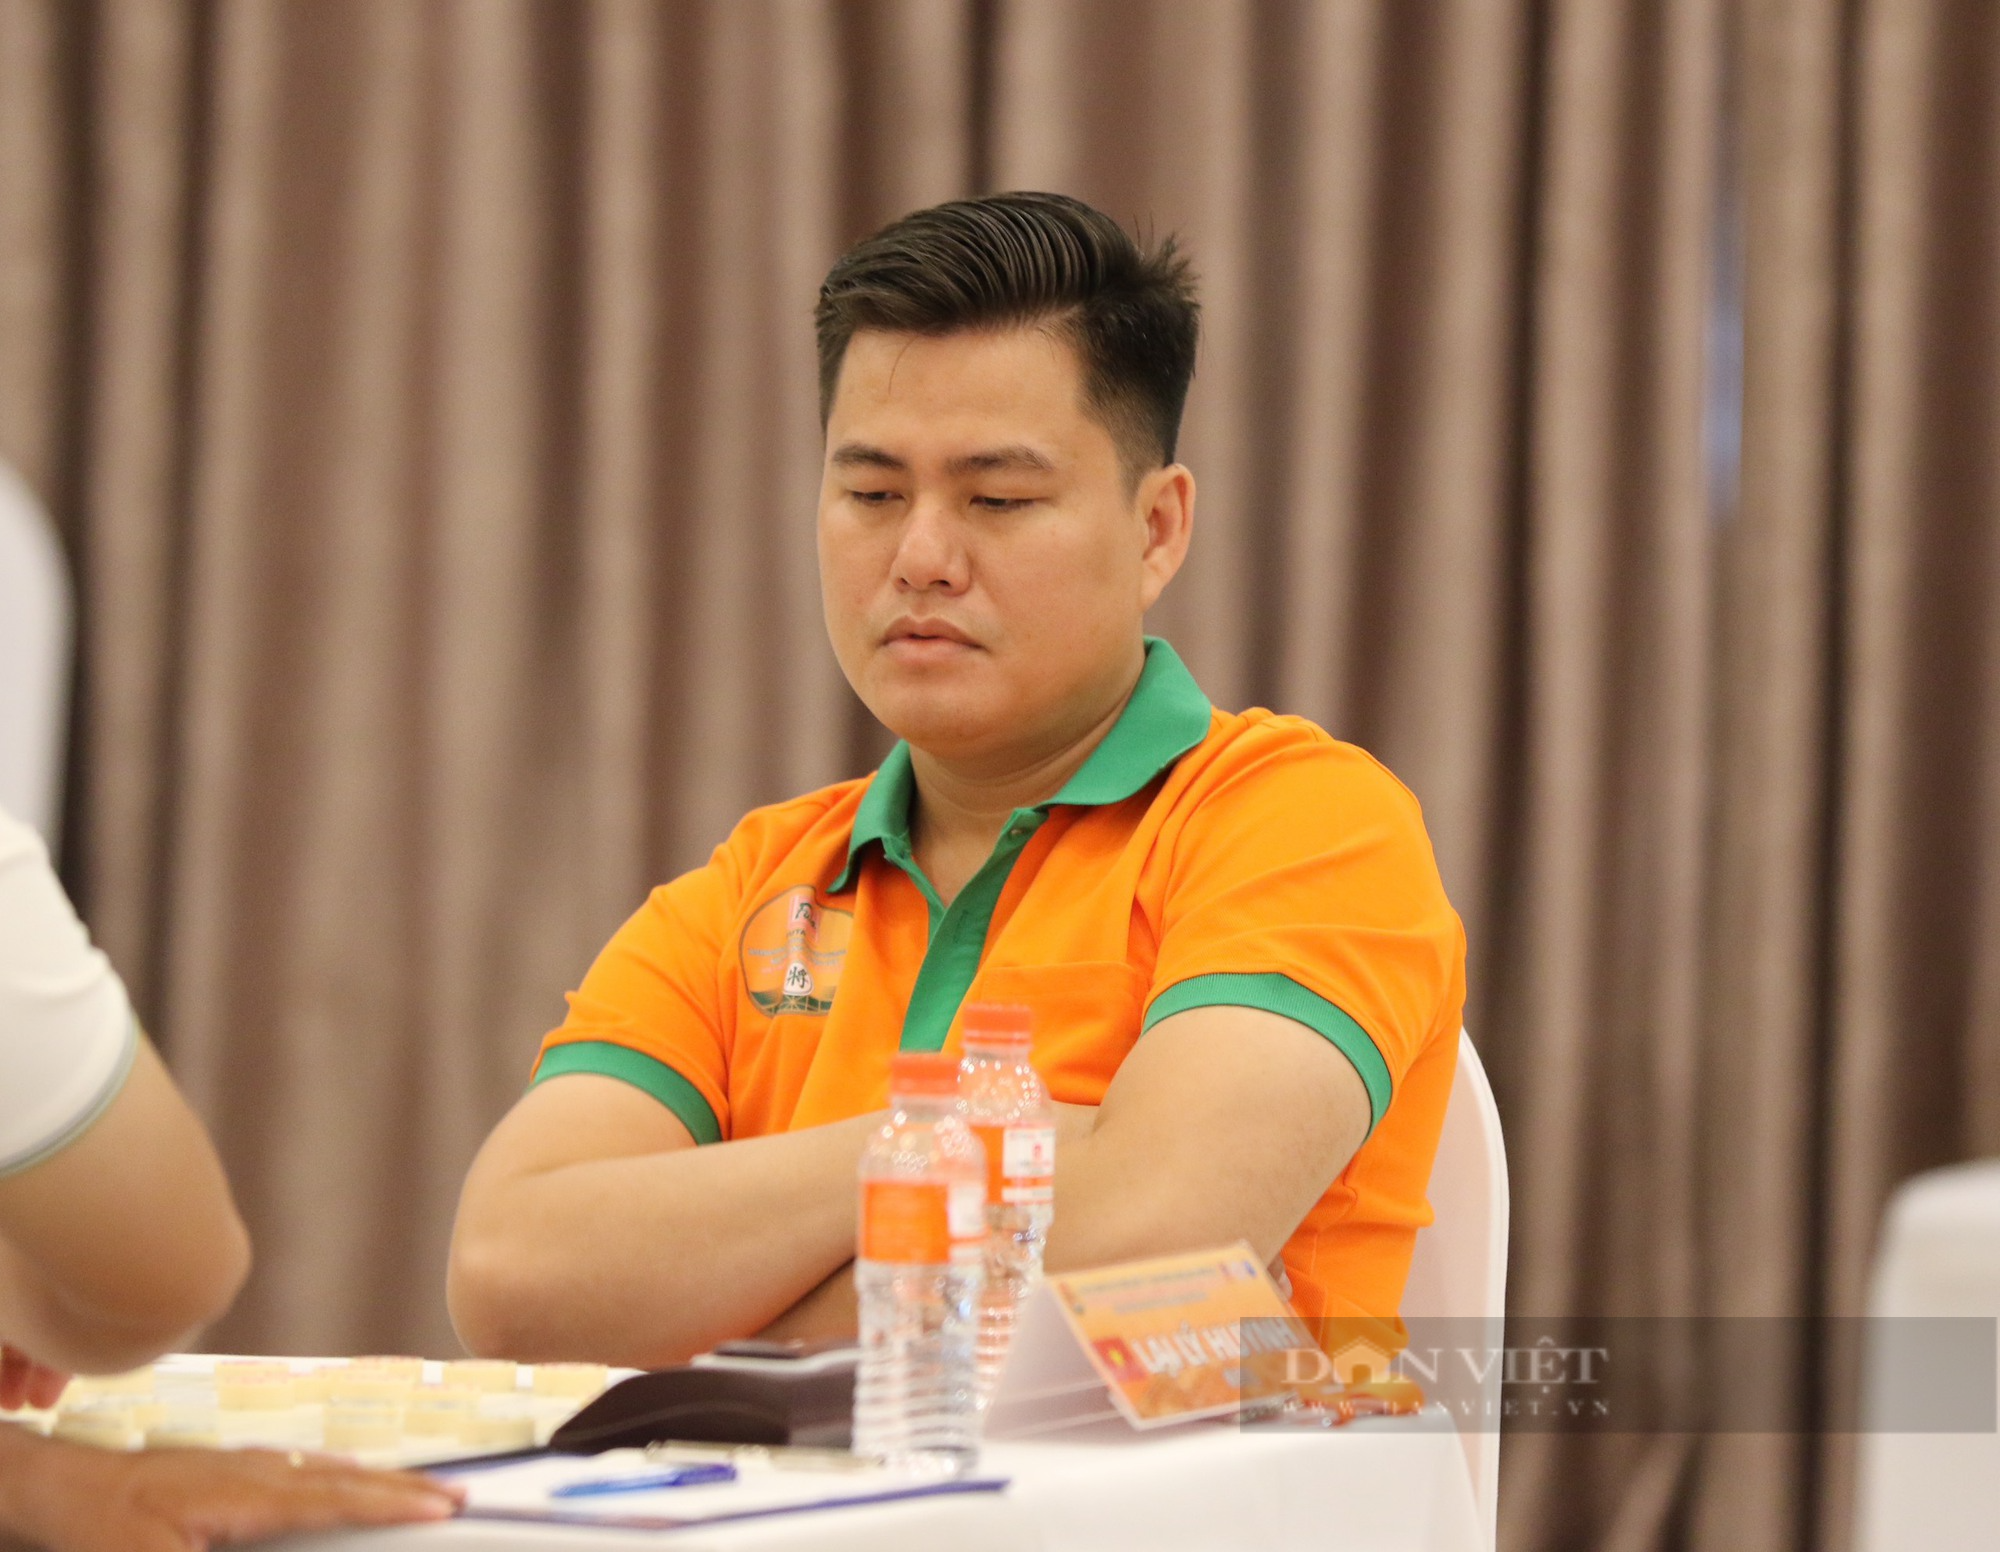 Cựu vô địch Việt Nam - Uông Dương Bắc thua đau trước danh thủ Tưởng Xuyên ở bán kết - Ảnh 3.